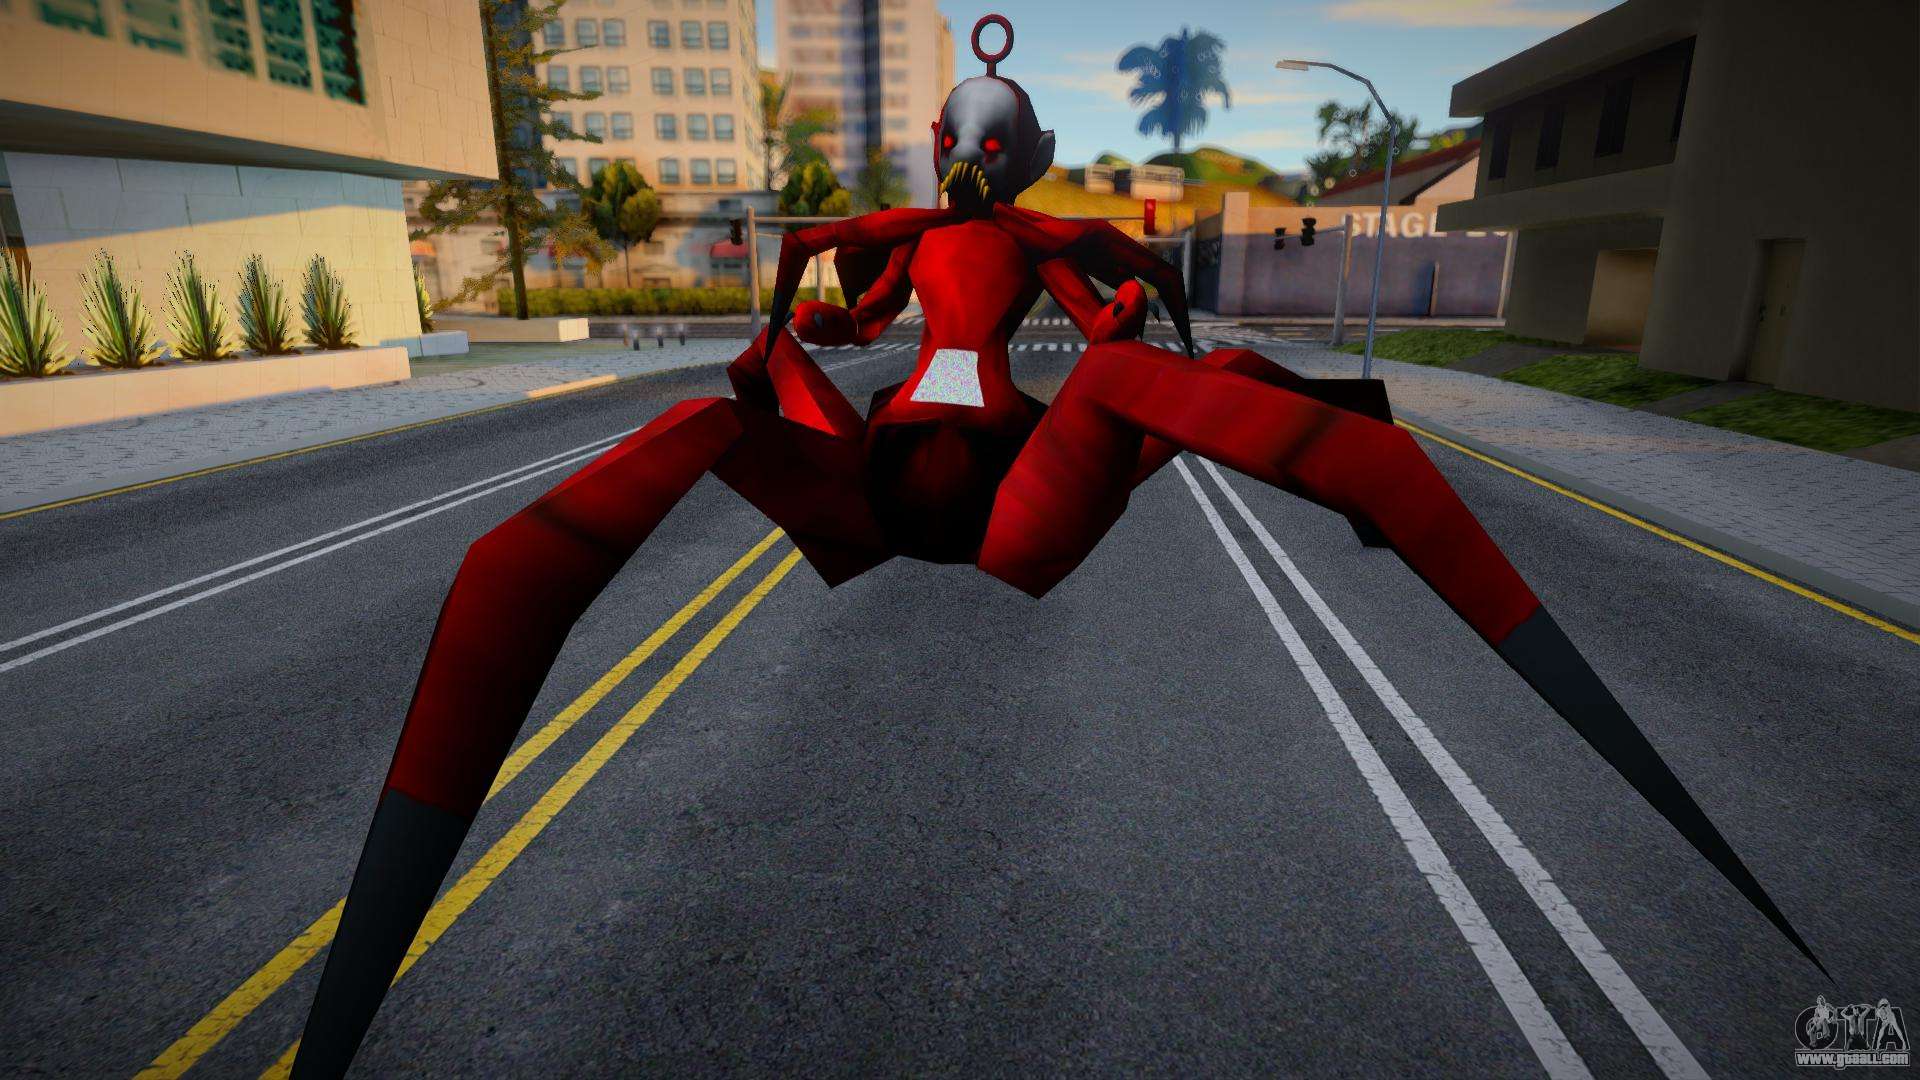 Steam Workshop::Slendytubbies 3 - Spider Po